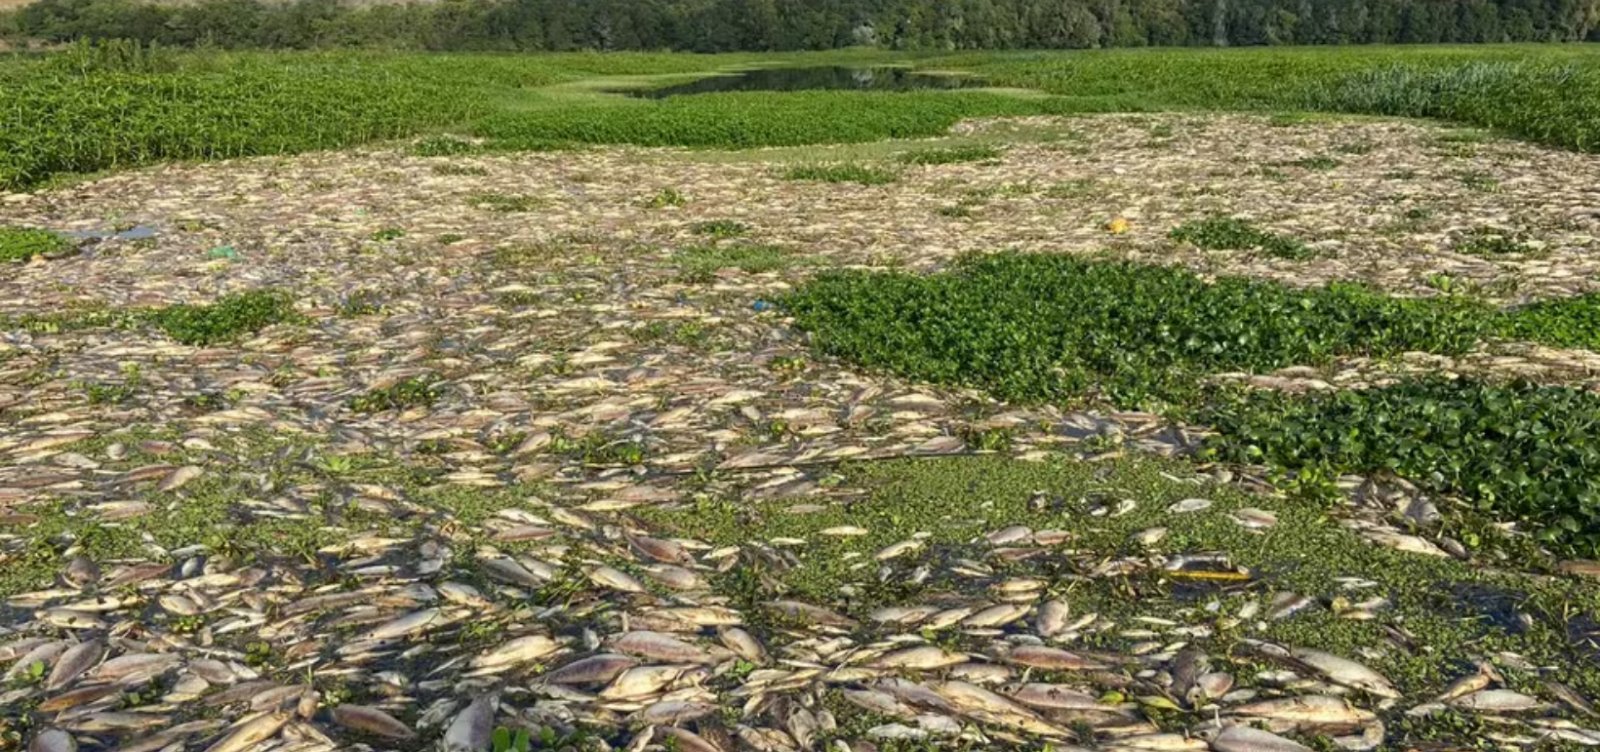 Usina de açúcar e álcool é acusada de despejar resíduos no Rio Piracicaba